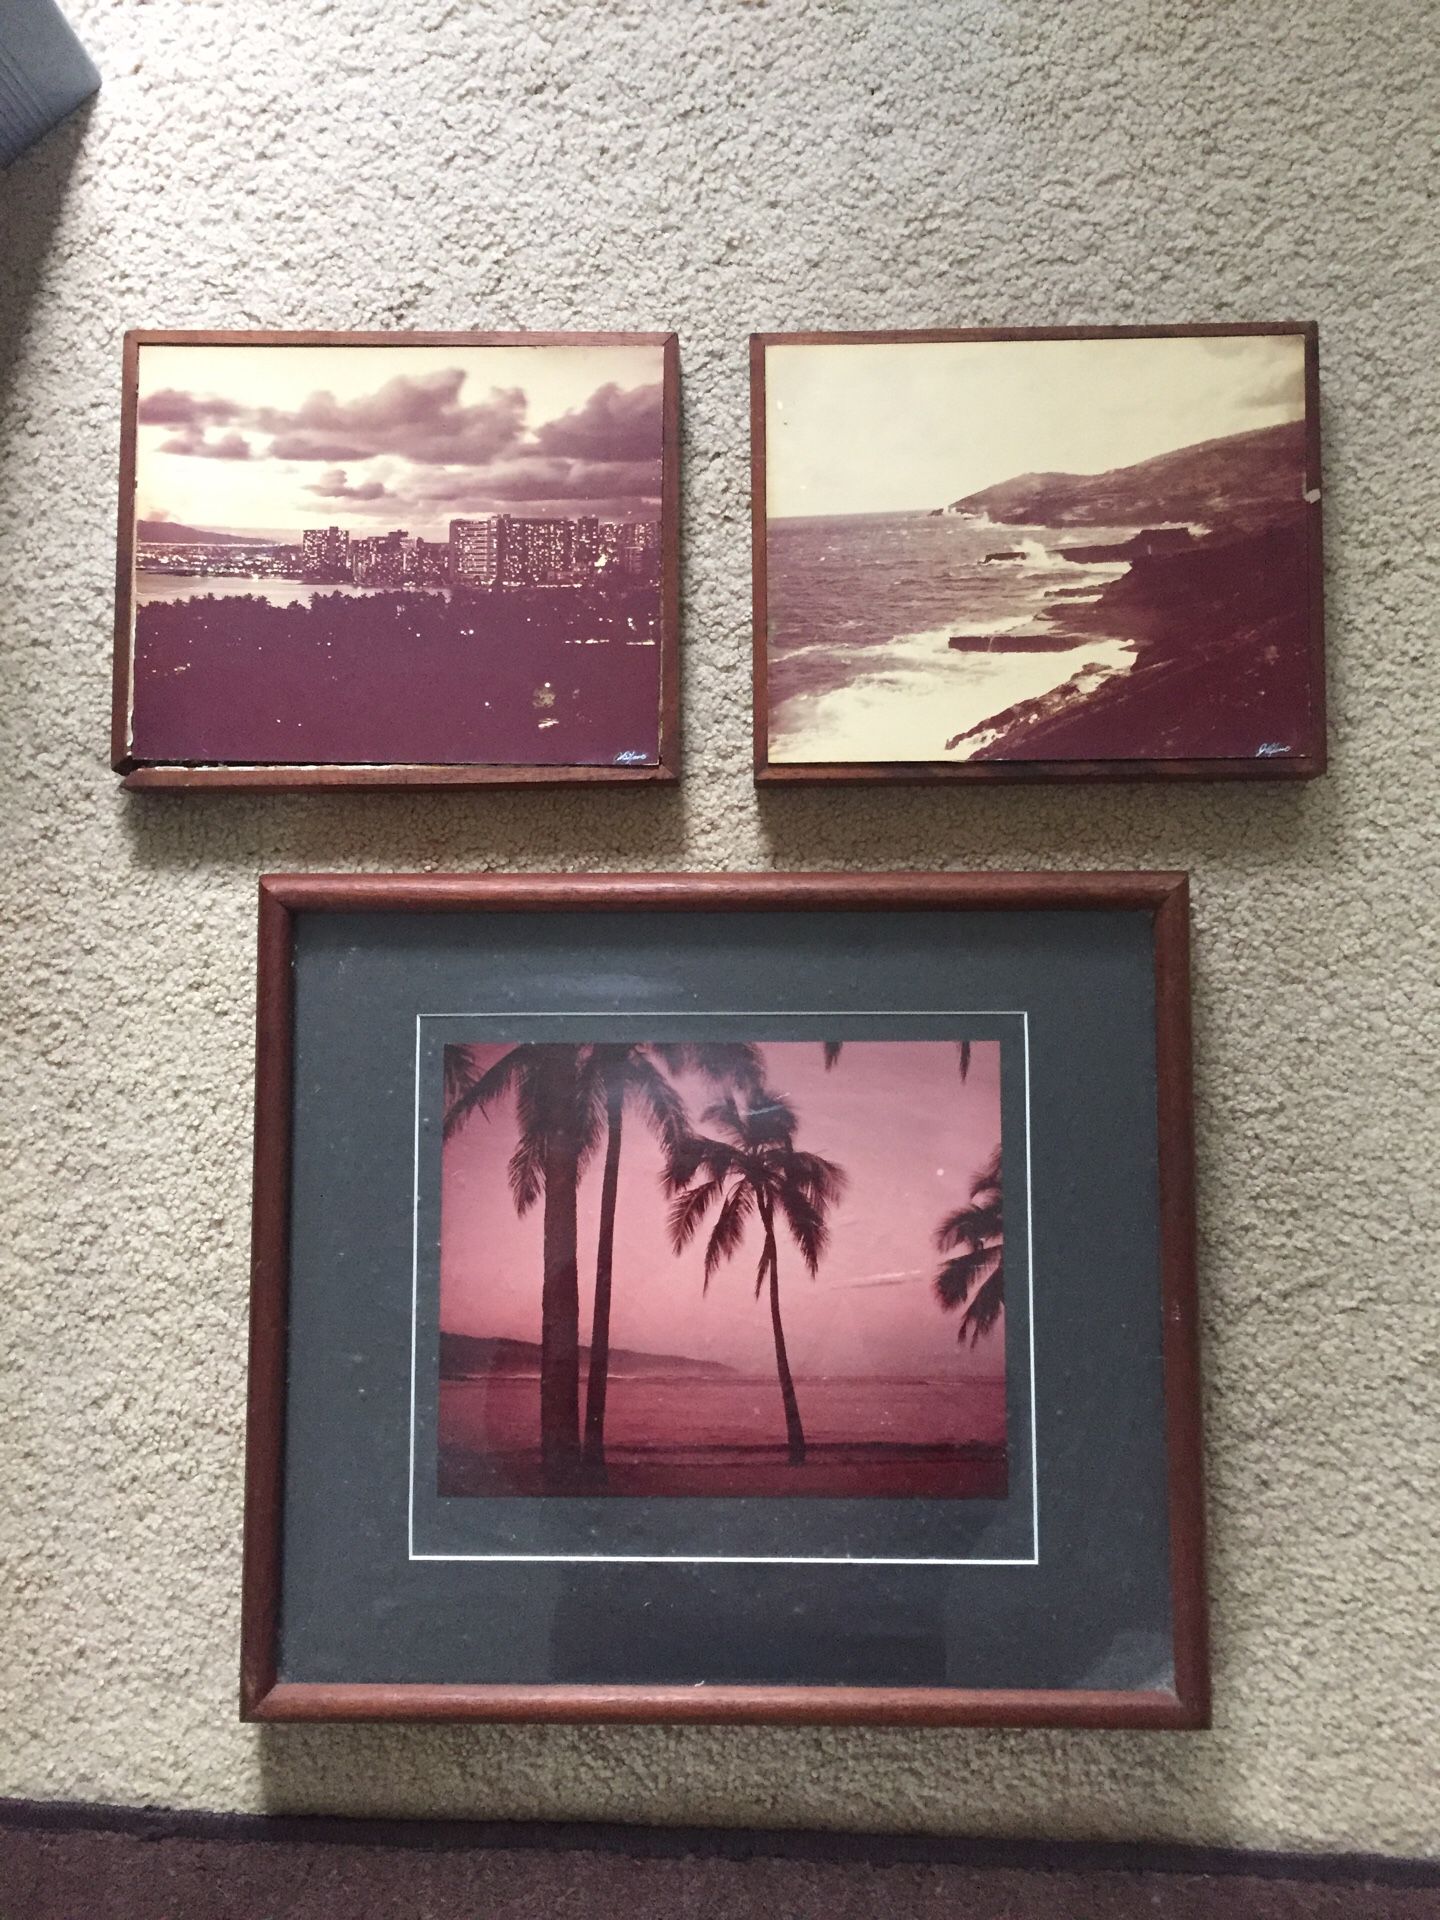 Old vintage photos of Hawai’i